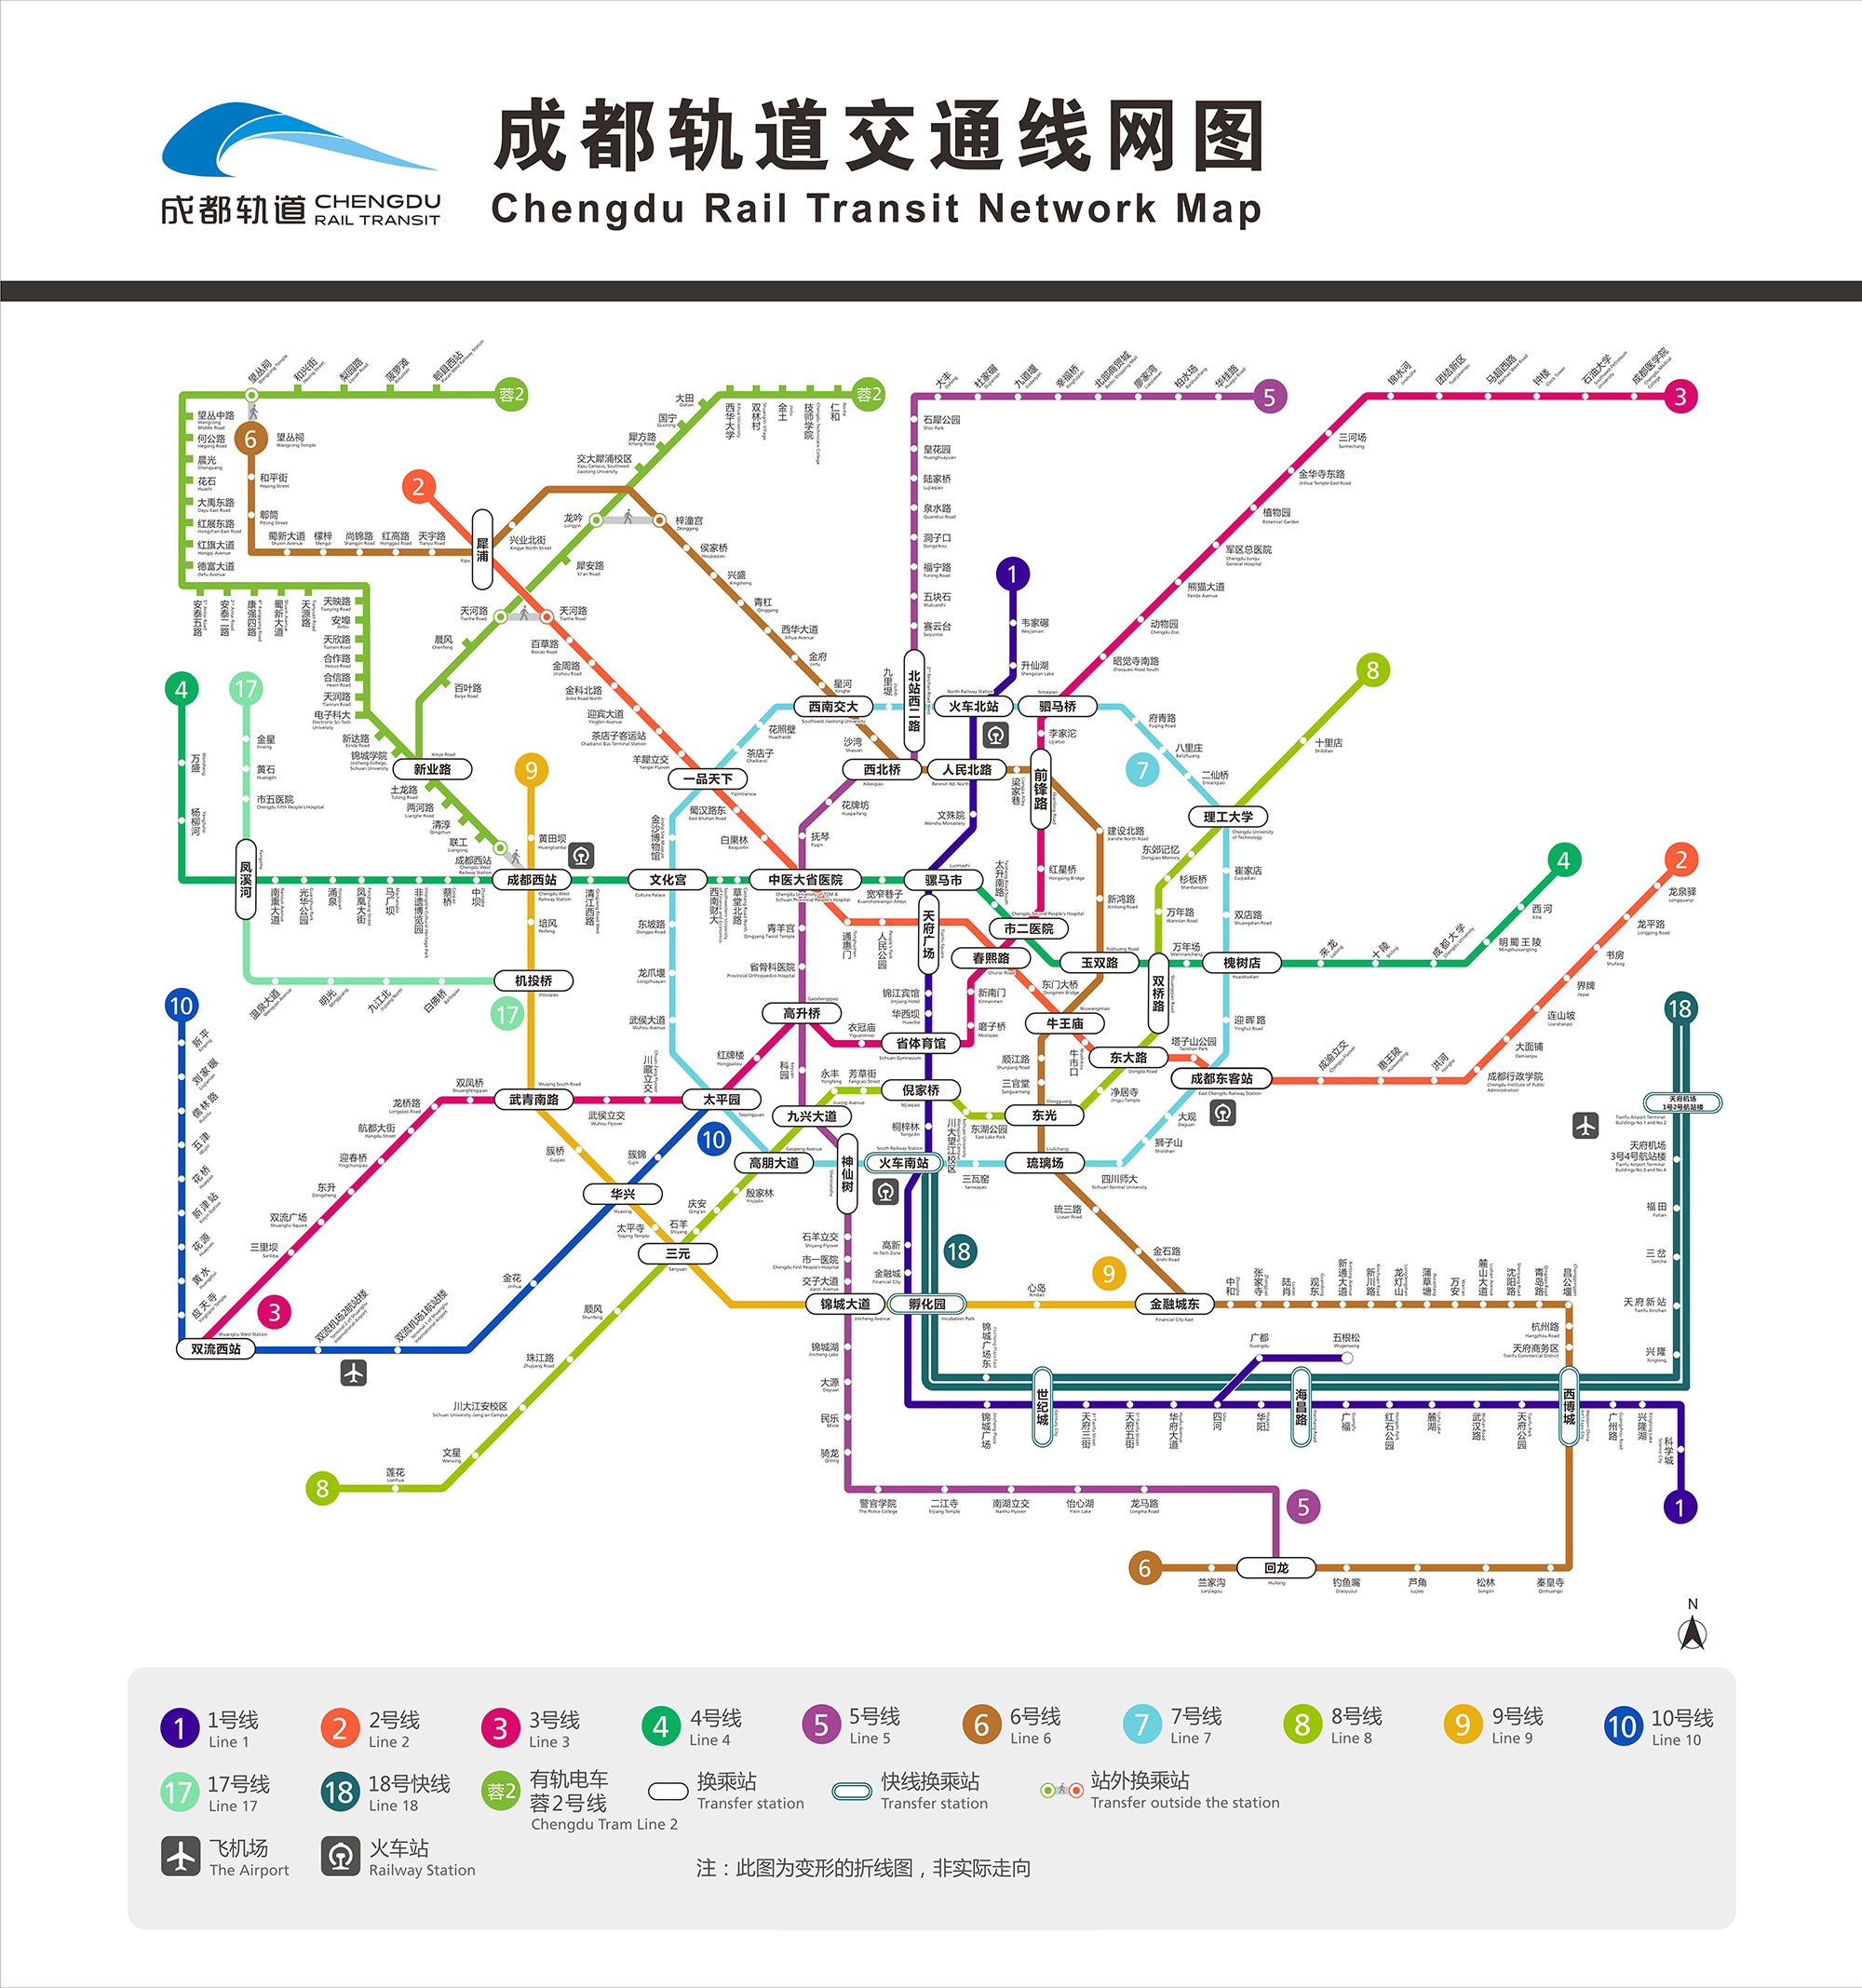 地铁线路图2020年图片